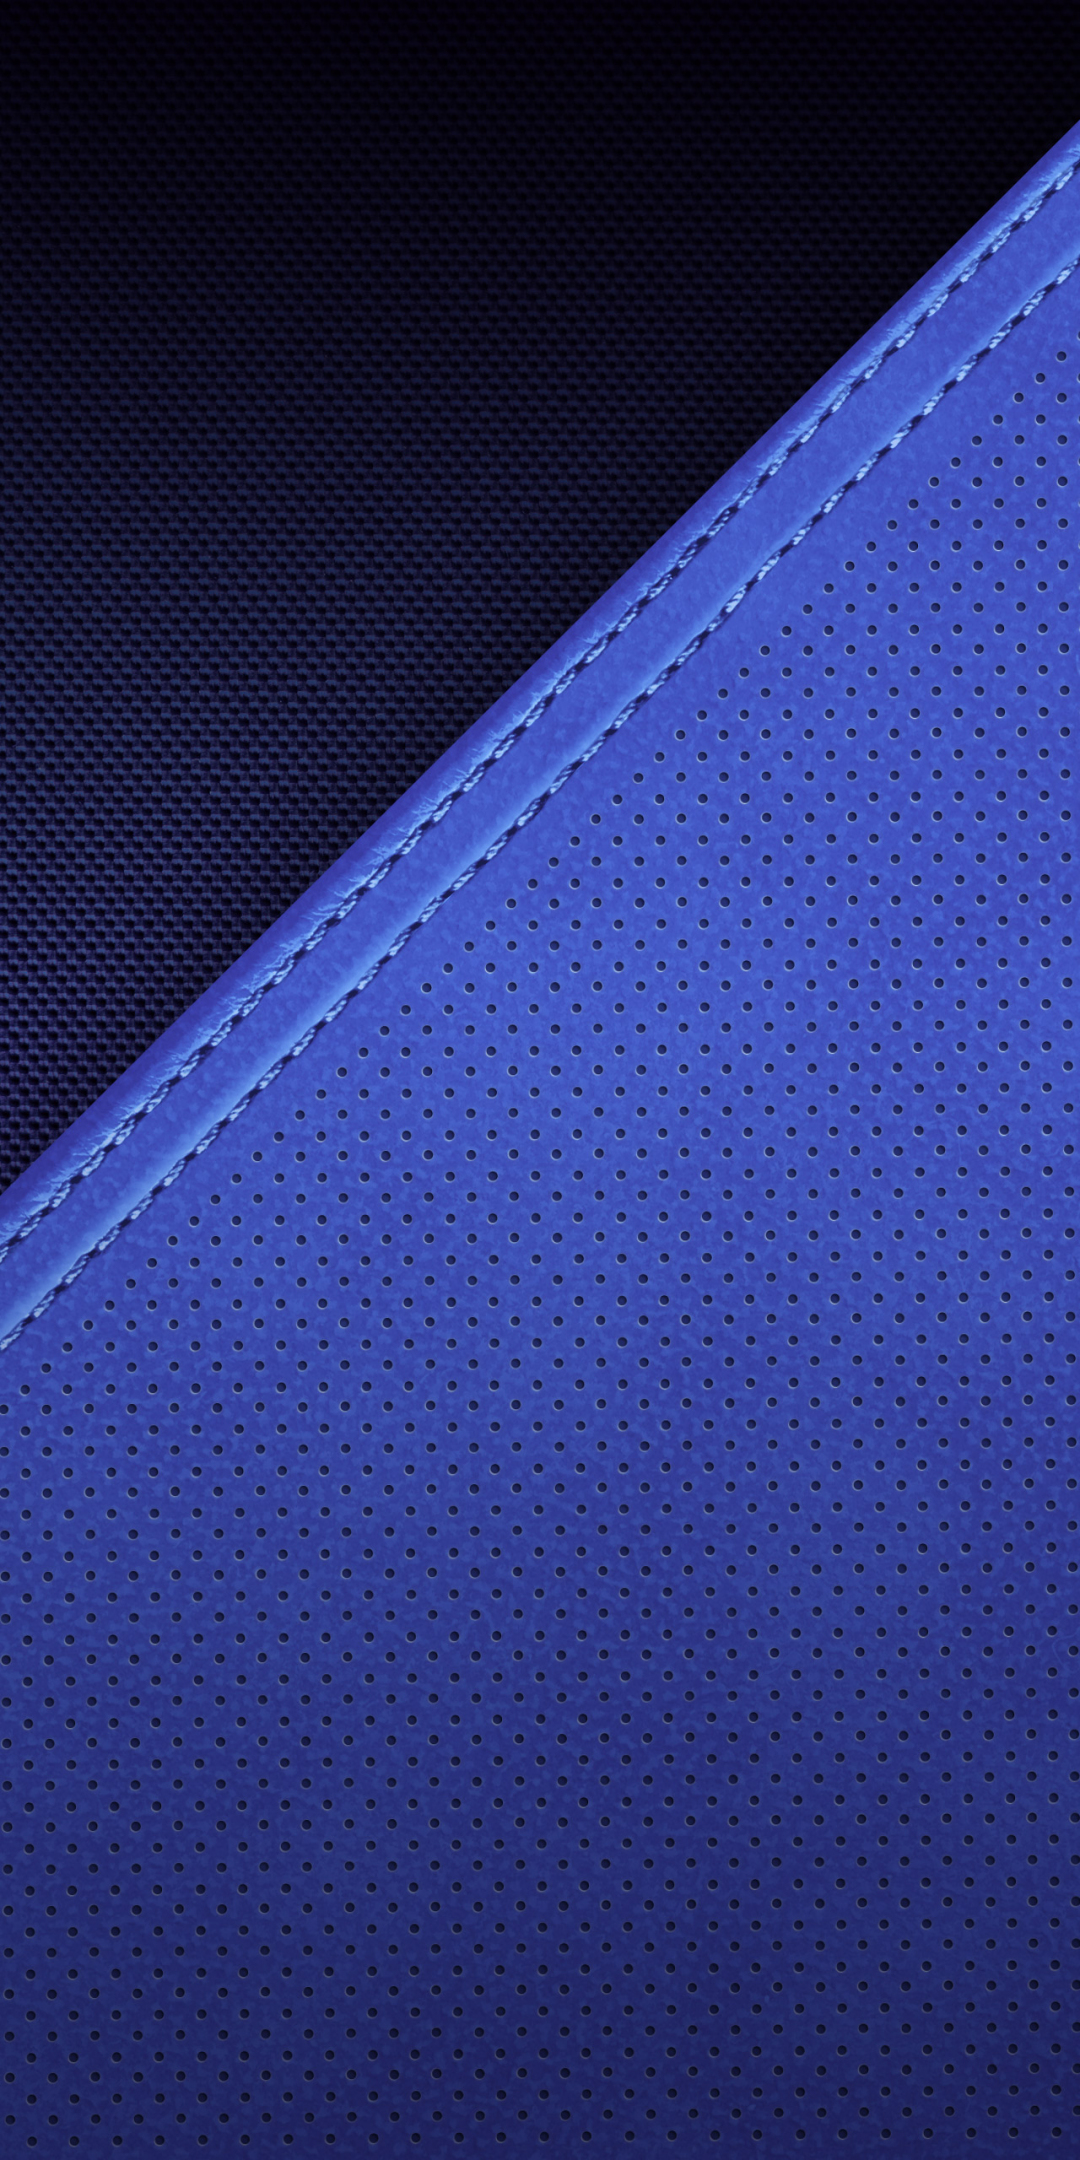 Texture, dots, abstract, pattern, denim blue, 1080x2160 wallpaper